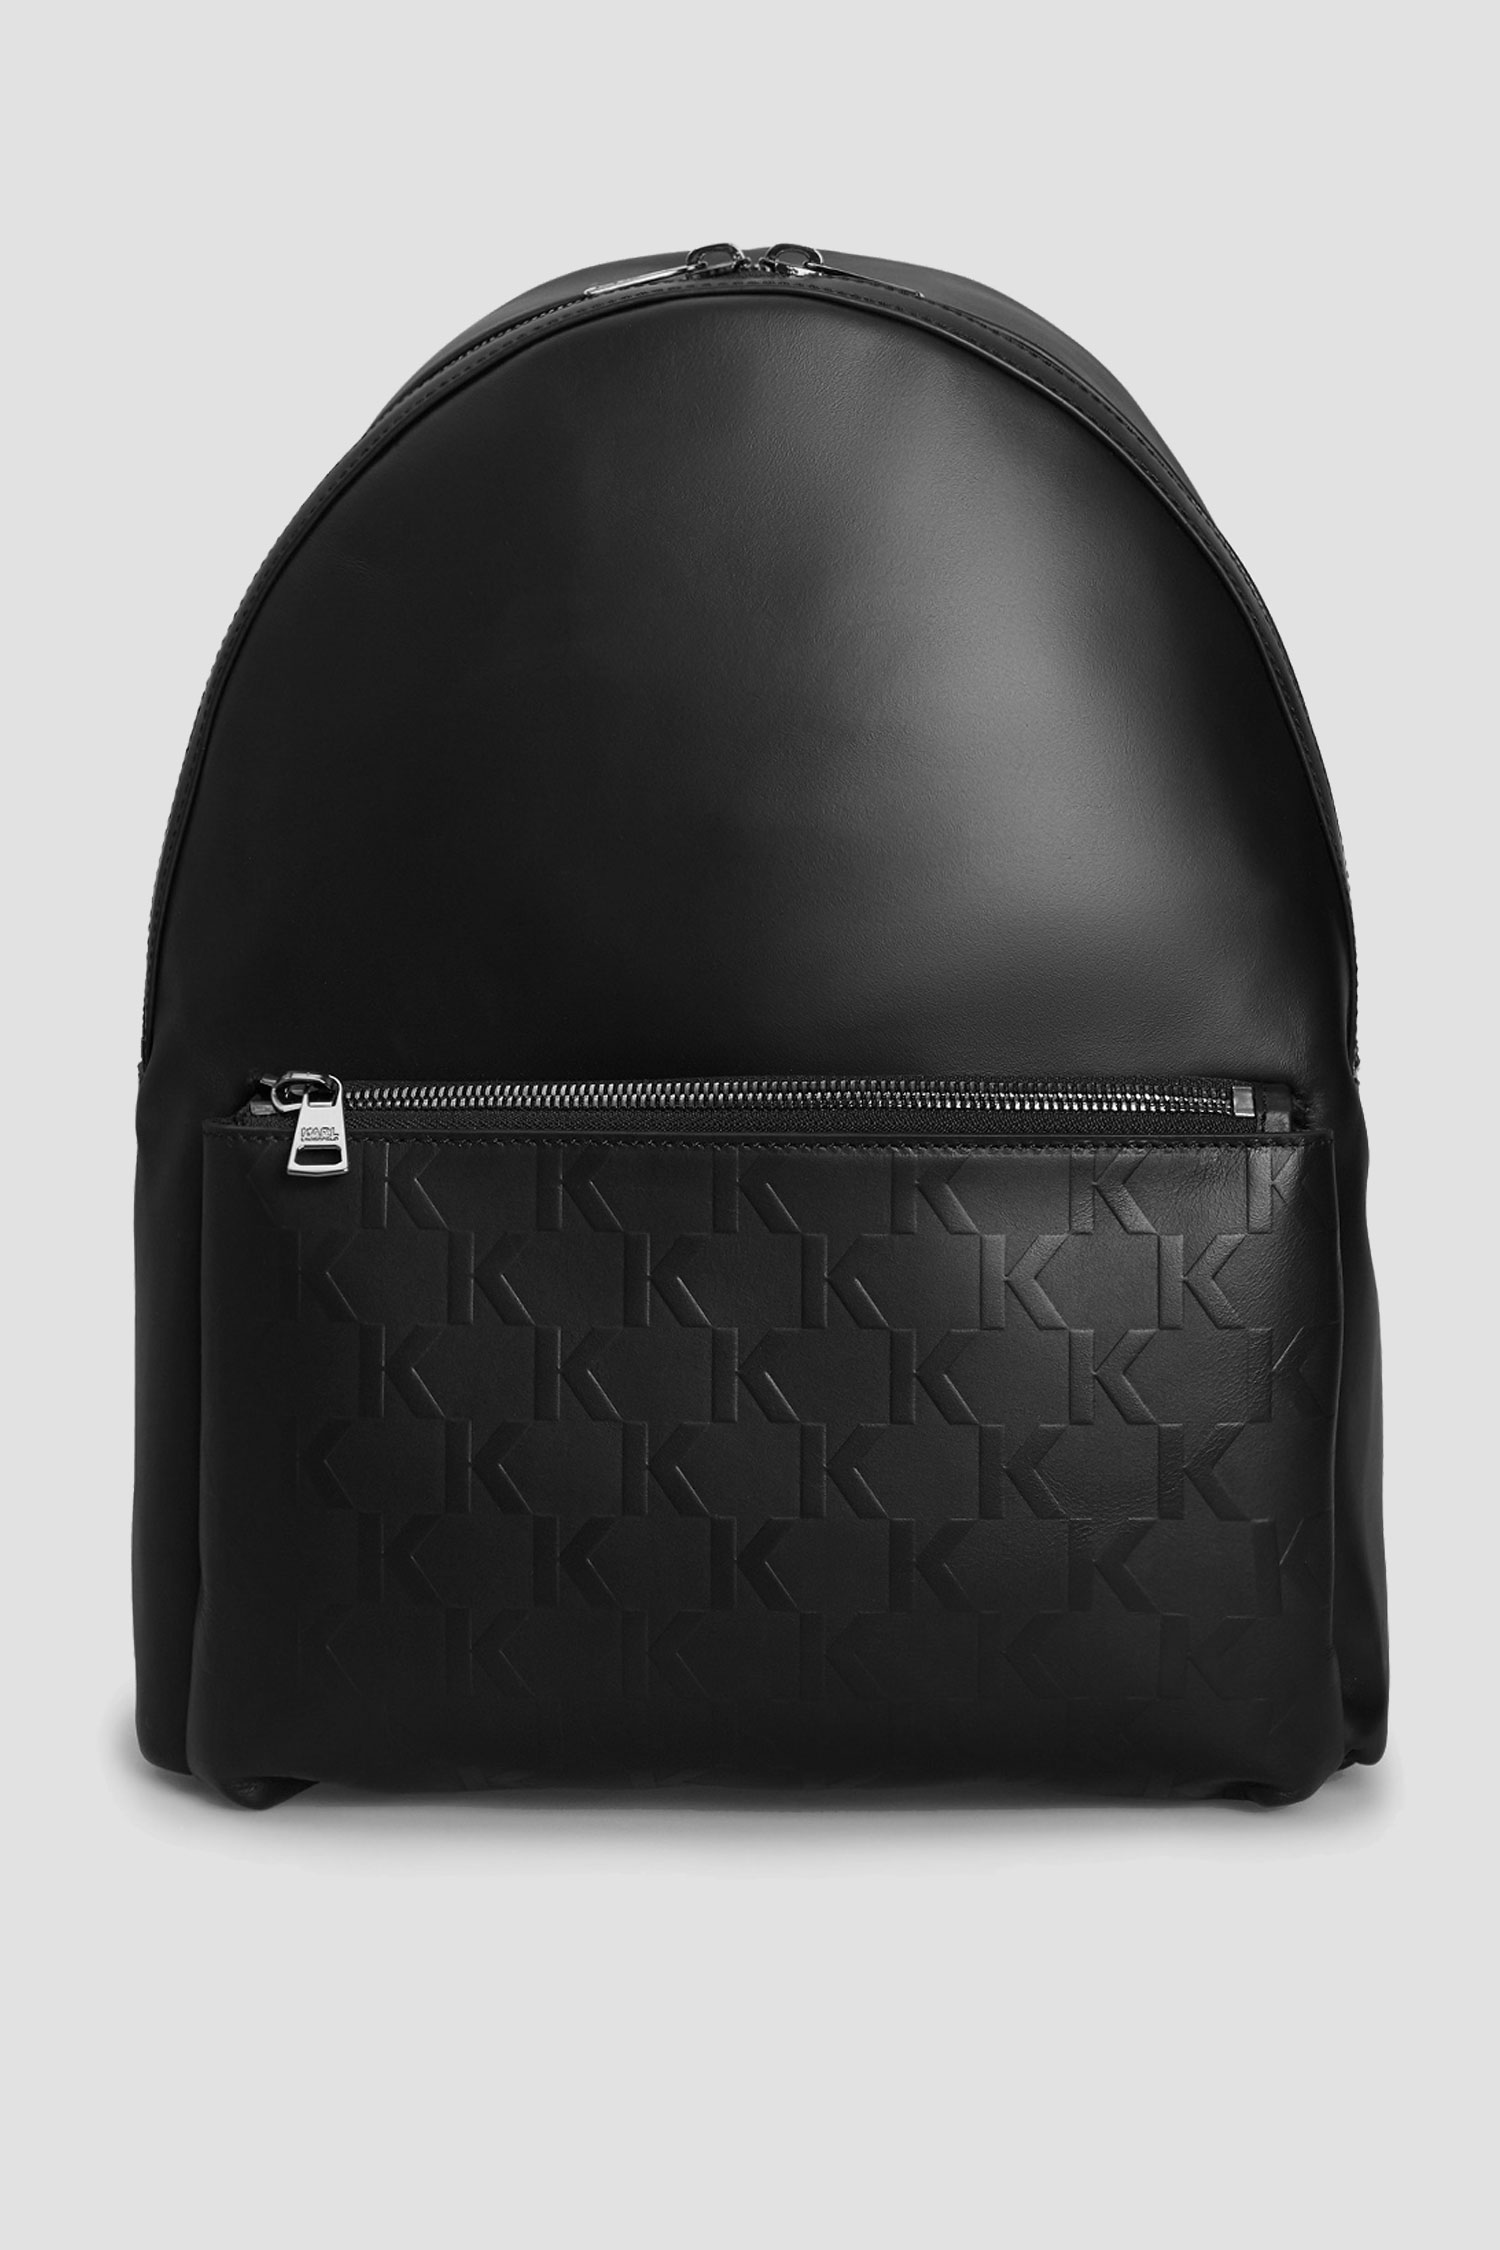 Мужской черный кожаный рюкзак Karl Lagerfeld 511453.815901;990